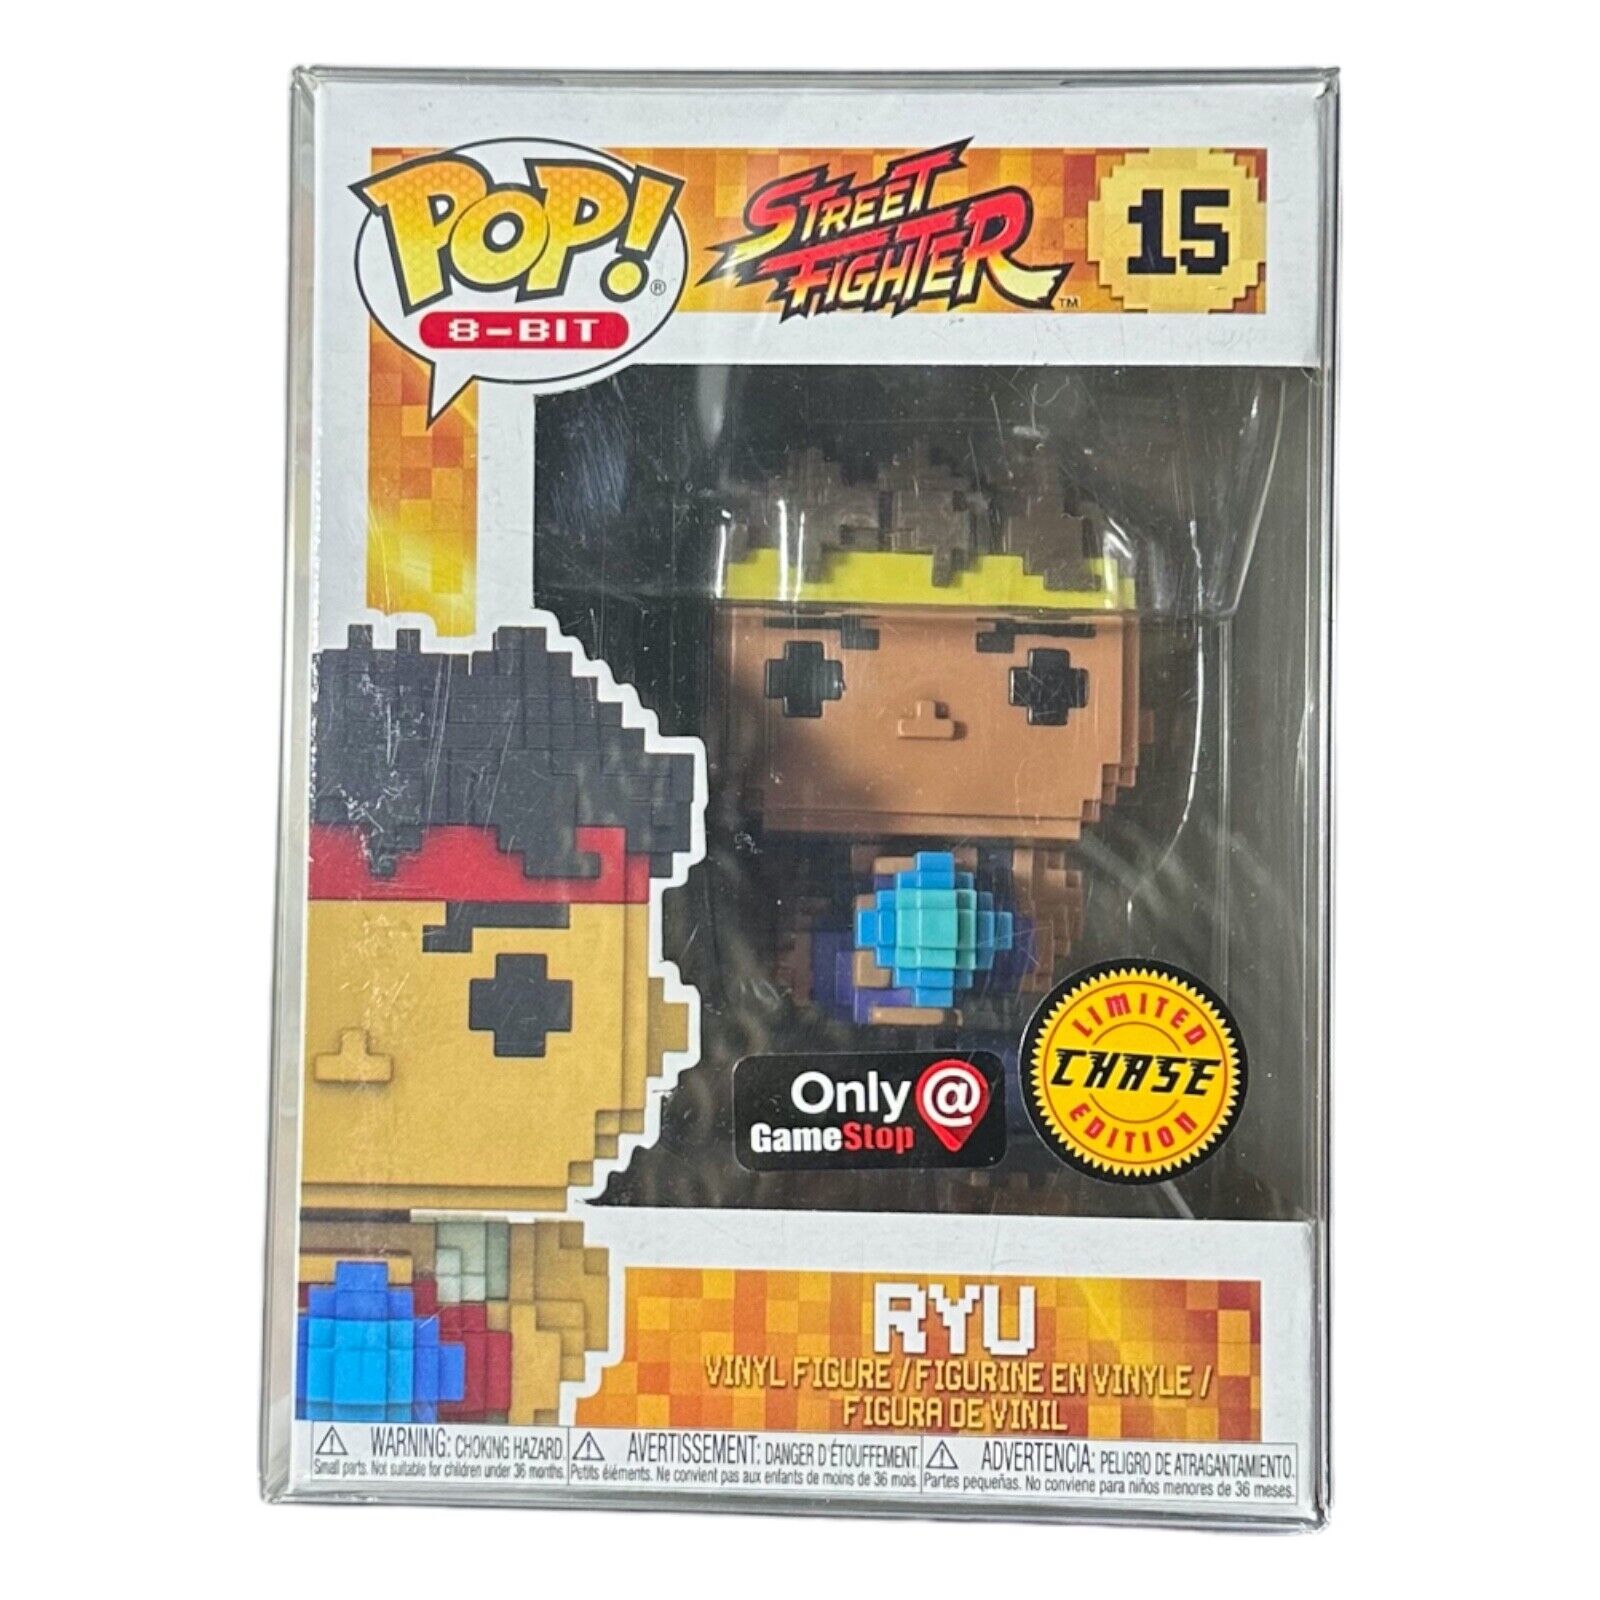 Funko Pop 8-Bit Street Fighter Ryu #15 CHASE Vinyl